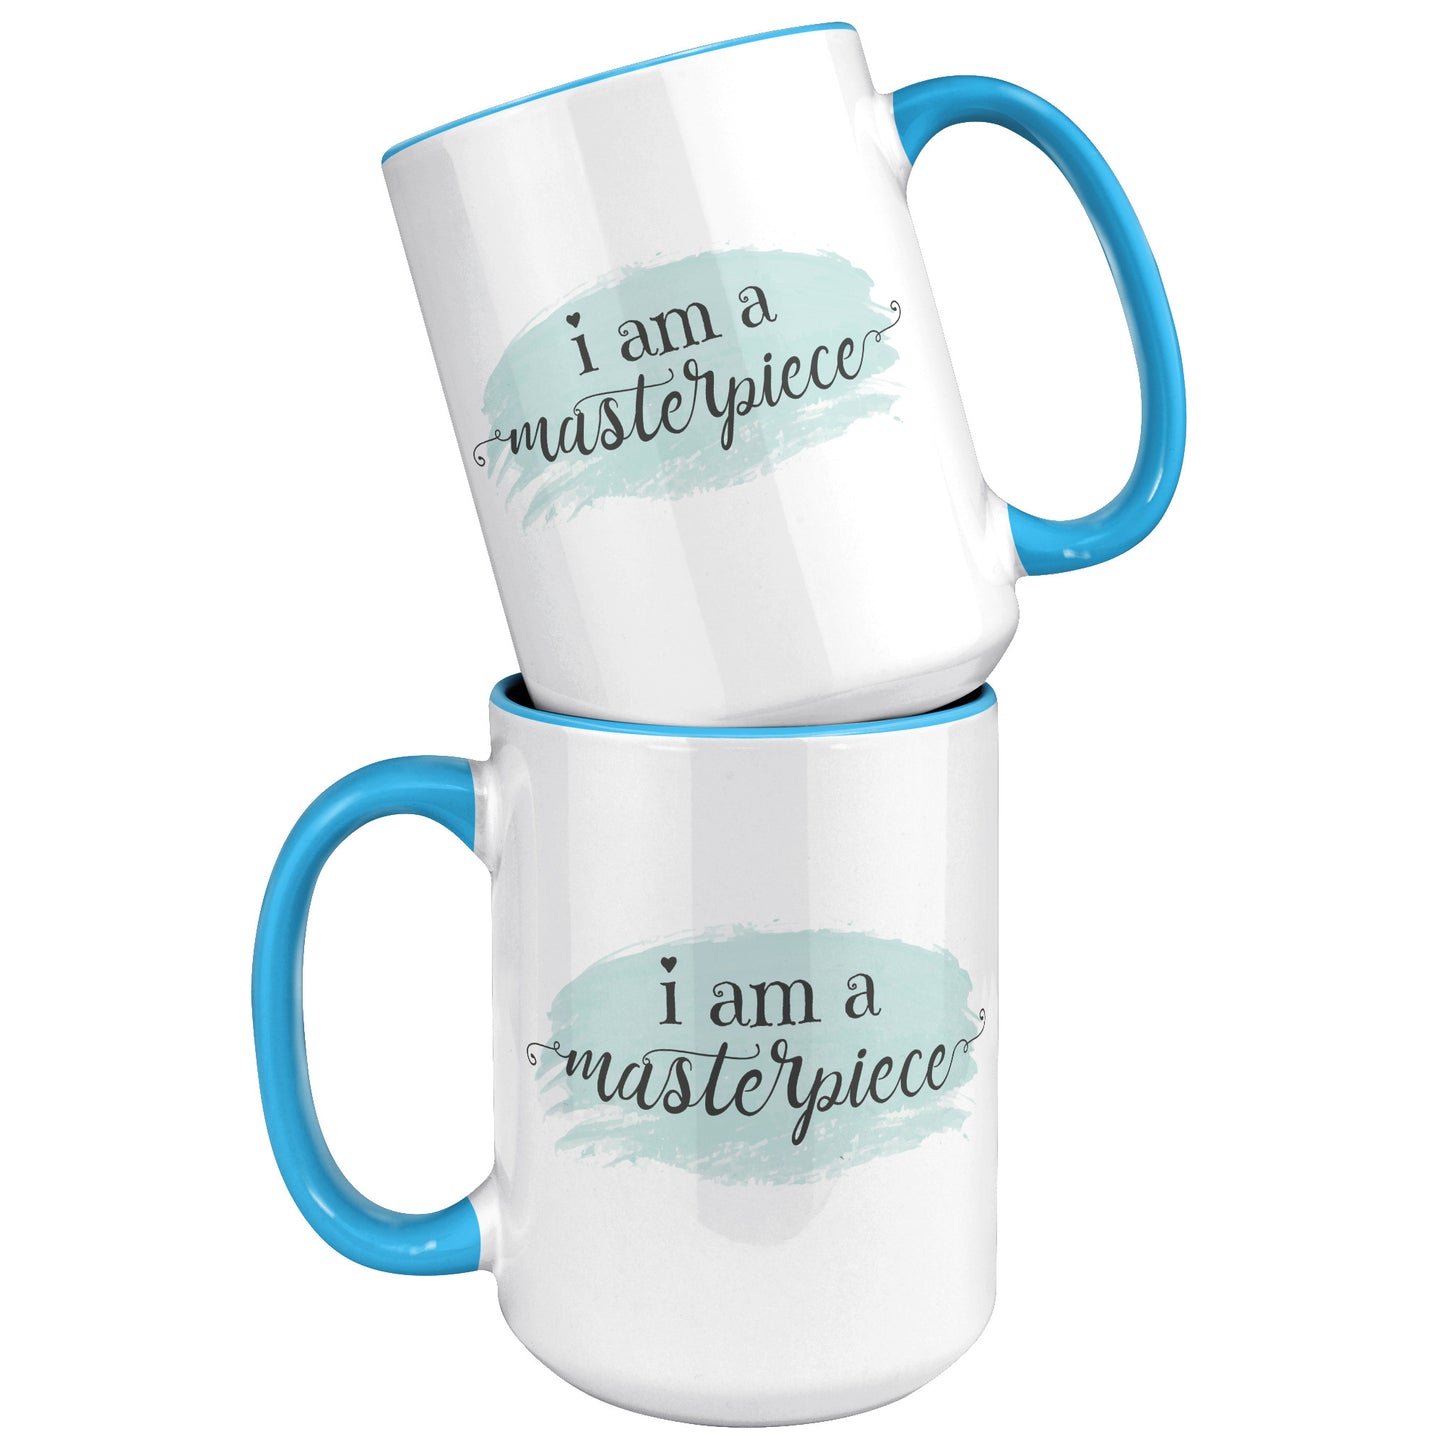 I am a Masterpiece 15 oz Ceramic Accent Mug